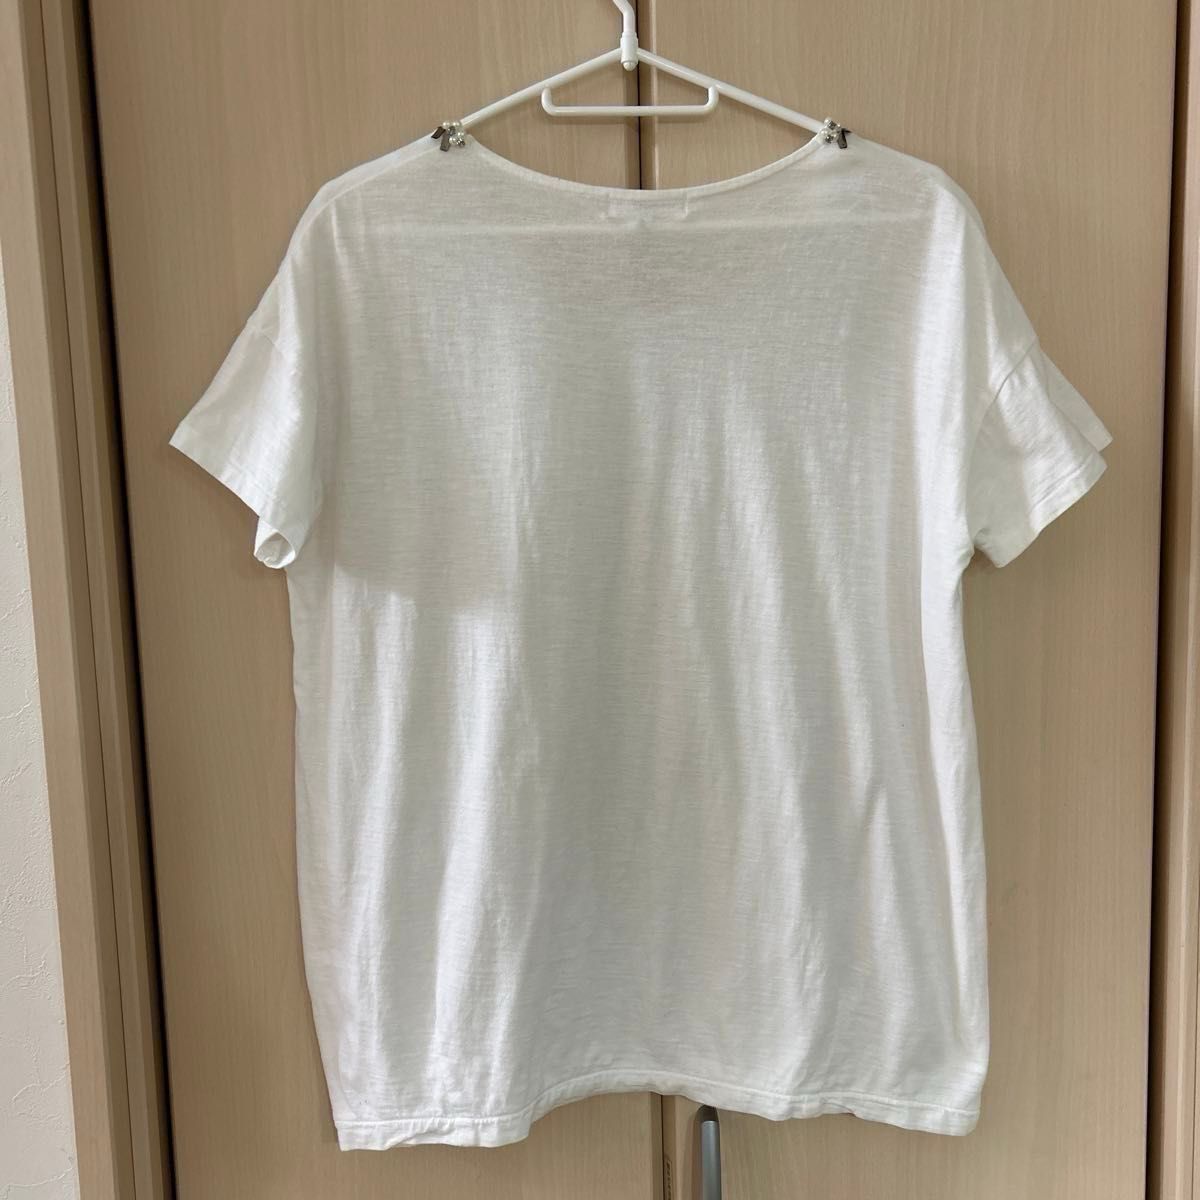 【NATURAL BEAUTY BASIC】(USED)ホワイト 襟まわり ビジュー付き 半袖Tシャツ Mサイズ 